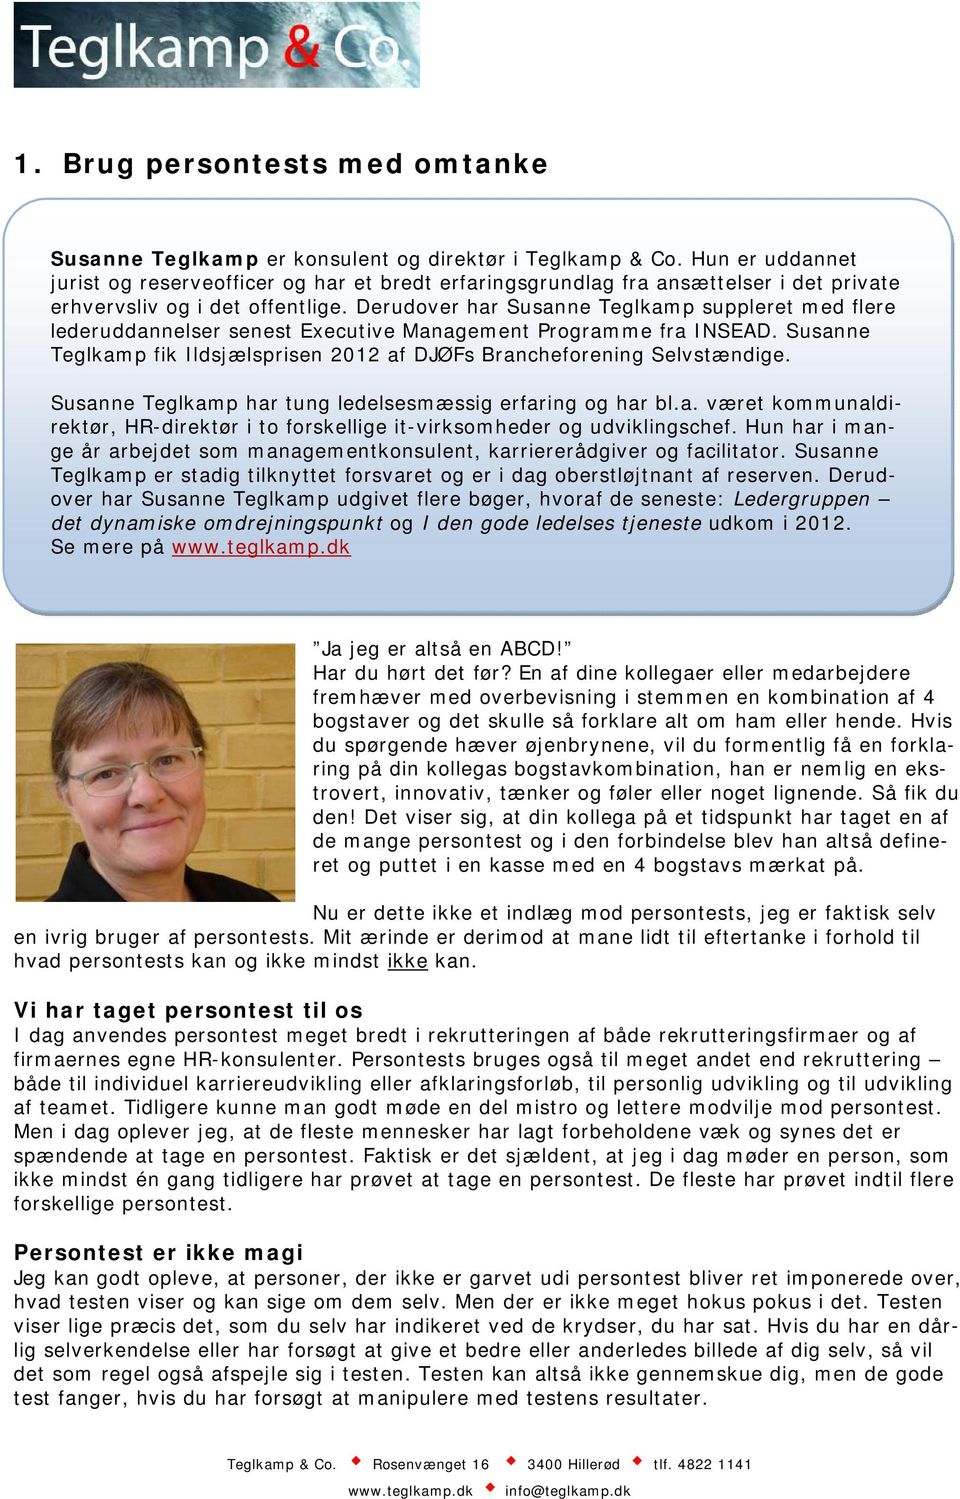 Derudover har Susanne Teglkamp suppleret med flere lederuddannelser senest Executive Management Programme fra INSEAD. Susanne Teglkamp fik Ildsjælsprisen 2012 af DJØFs Brancheforening Selvstændige.